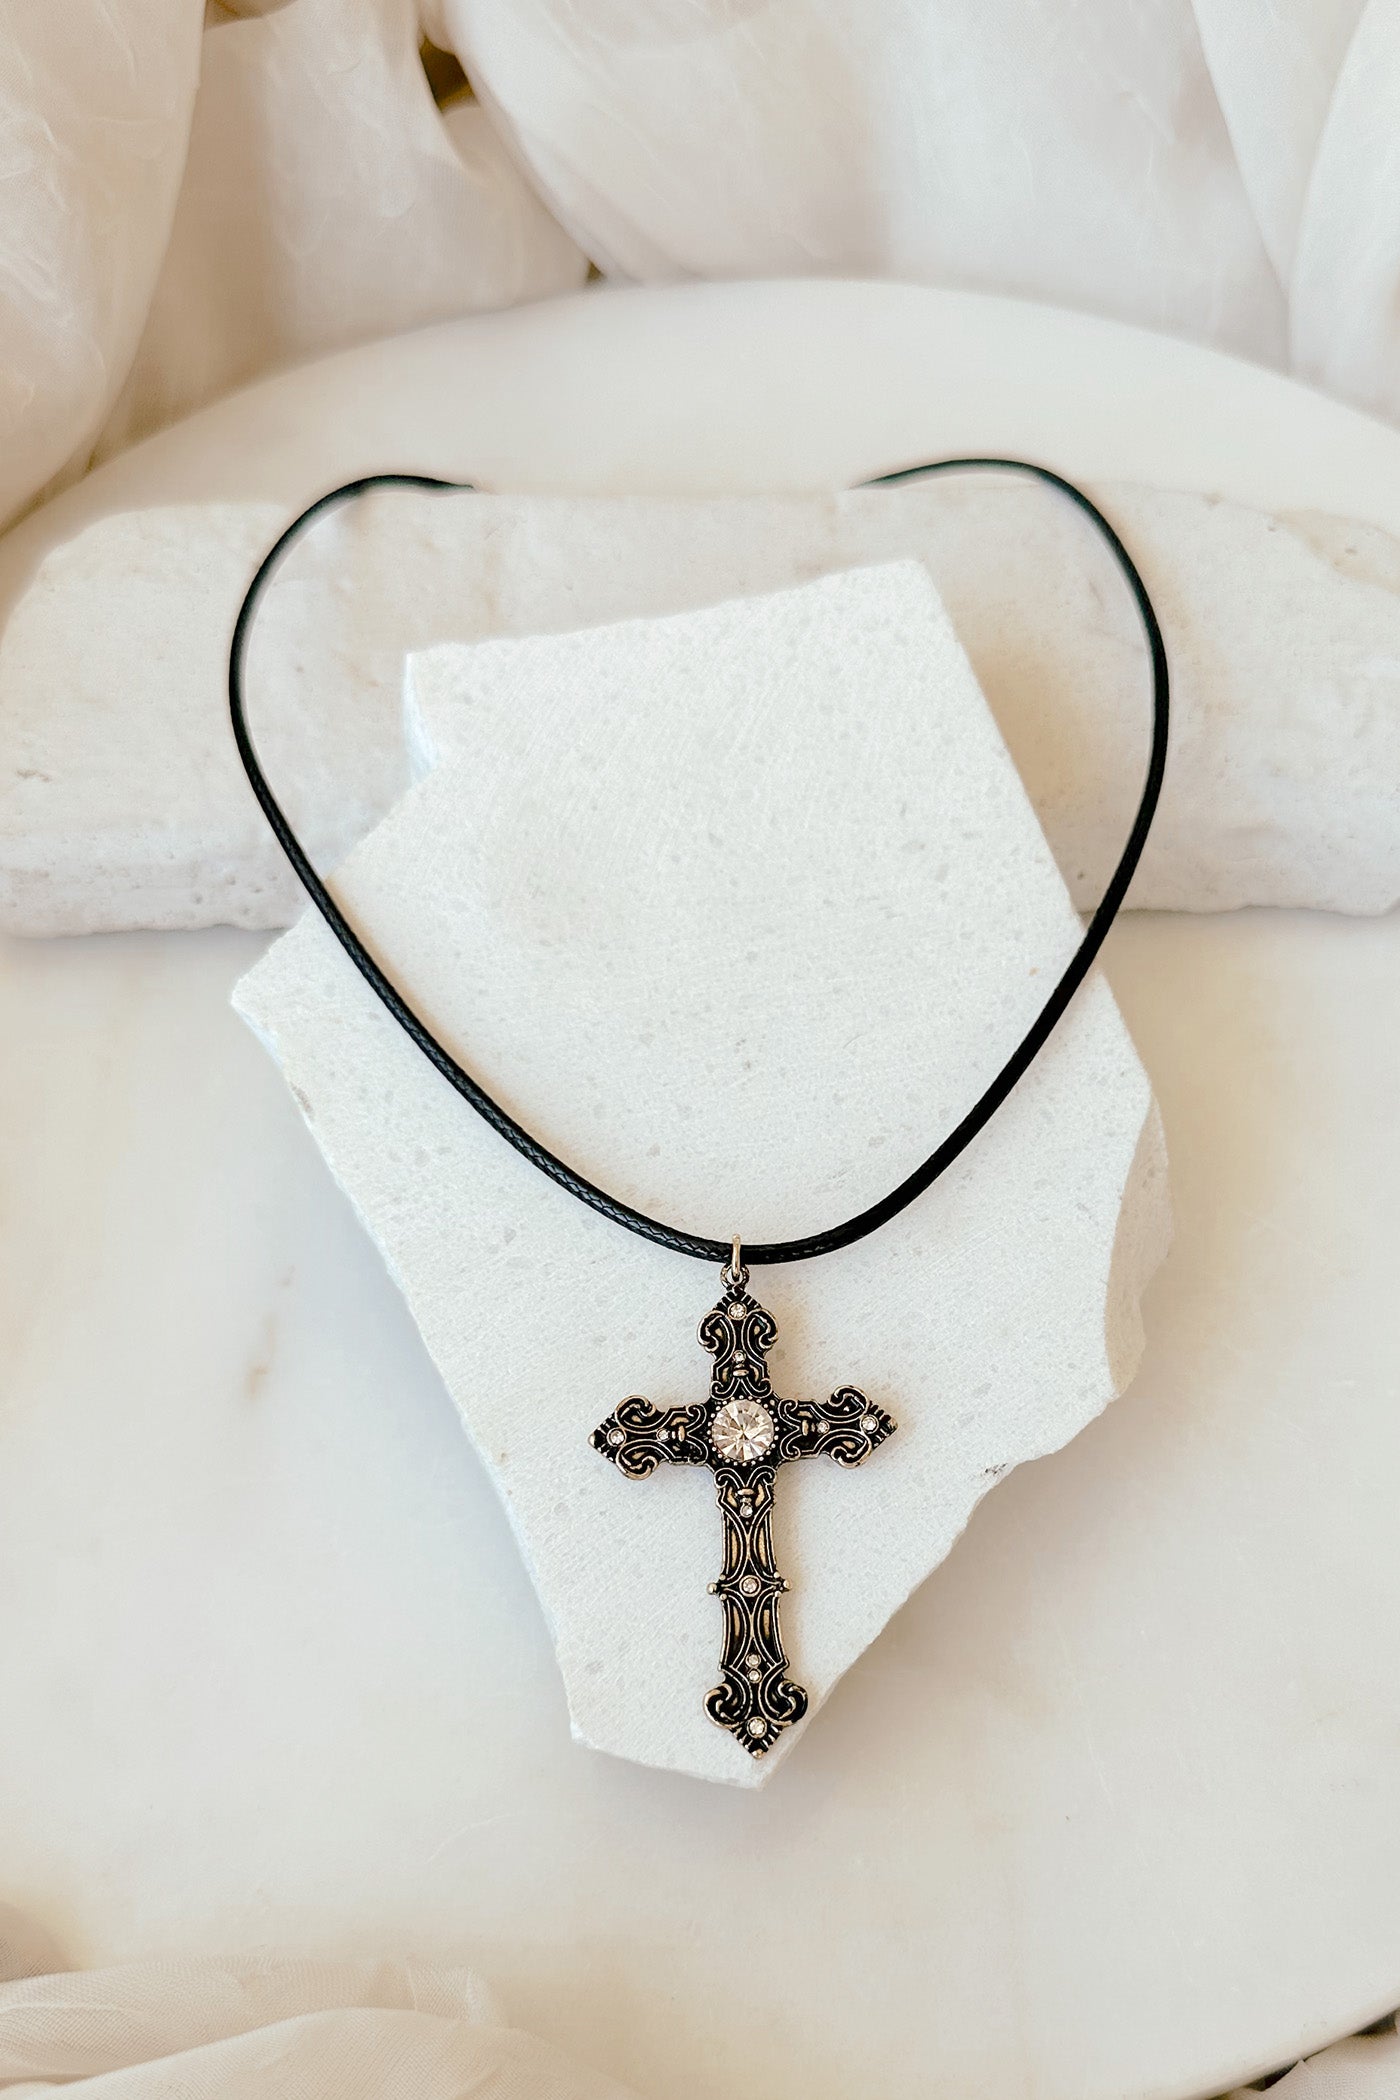 Oranate Cross Pendant Necklace